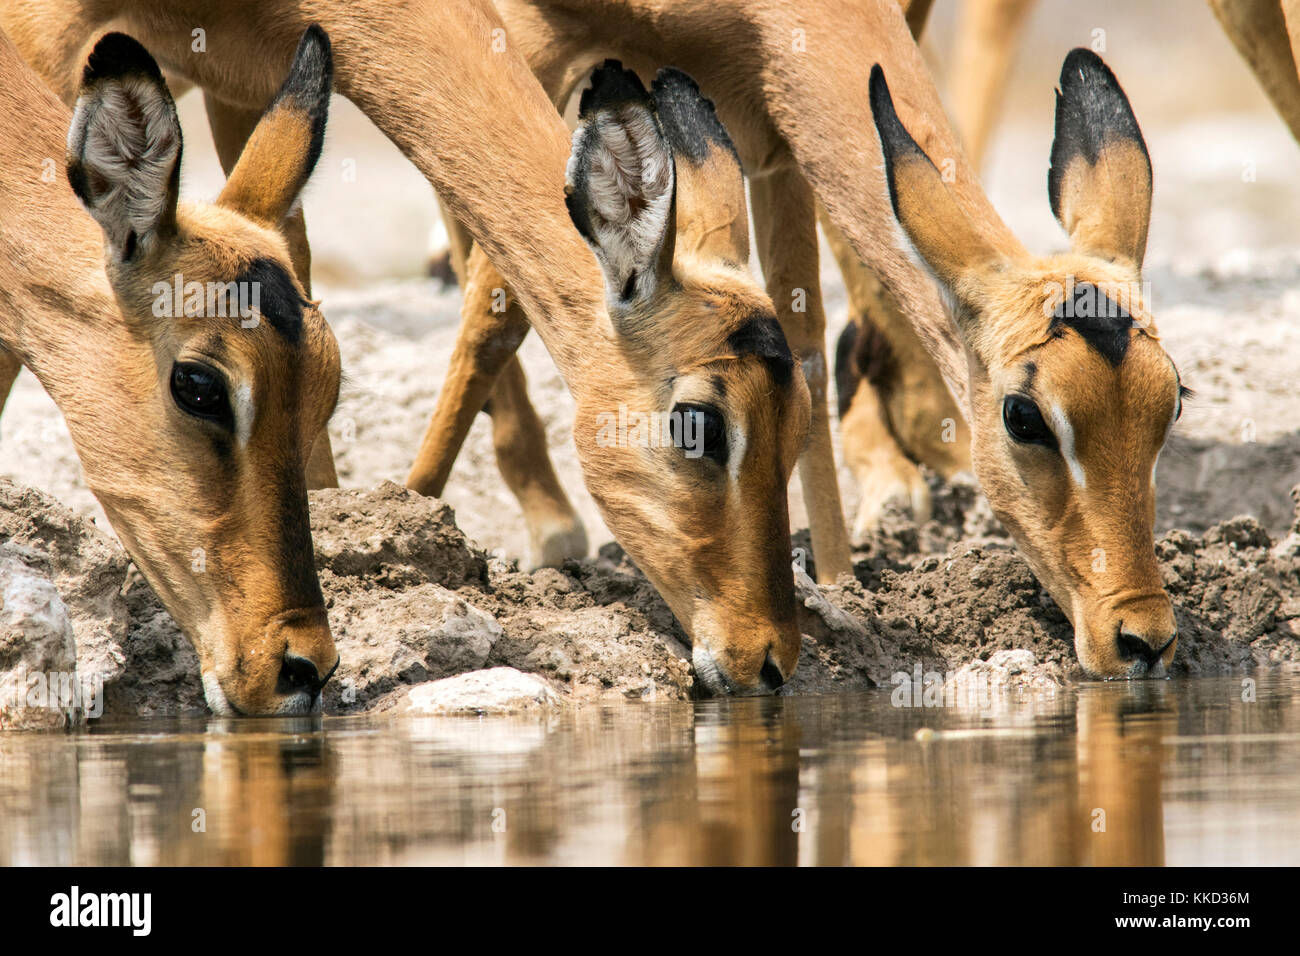 L'impala de l'alcool à n'onkolo cacher, onguma game reserve, la Namibie, l'Afrique Banque D'Images